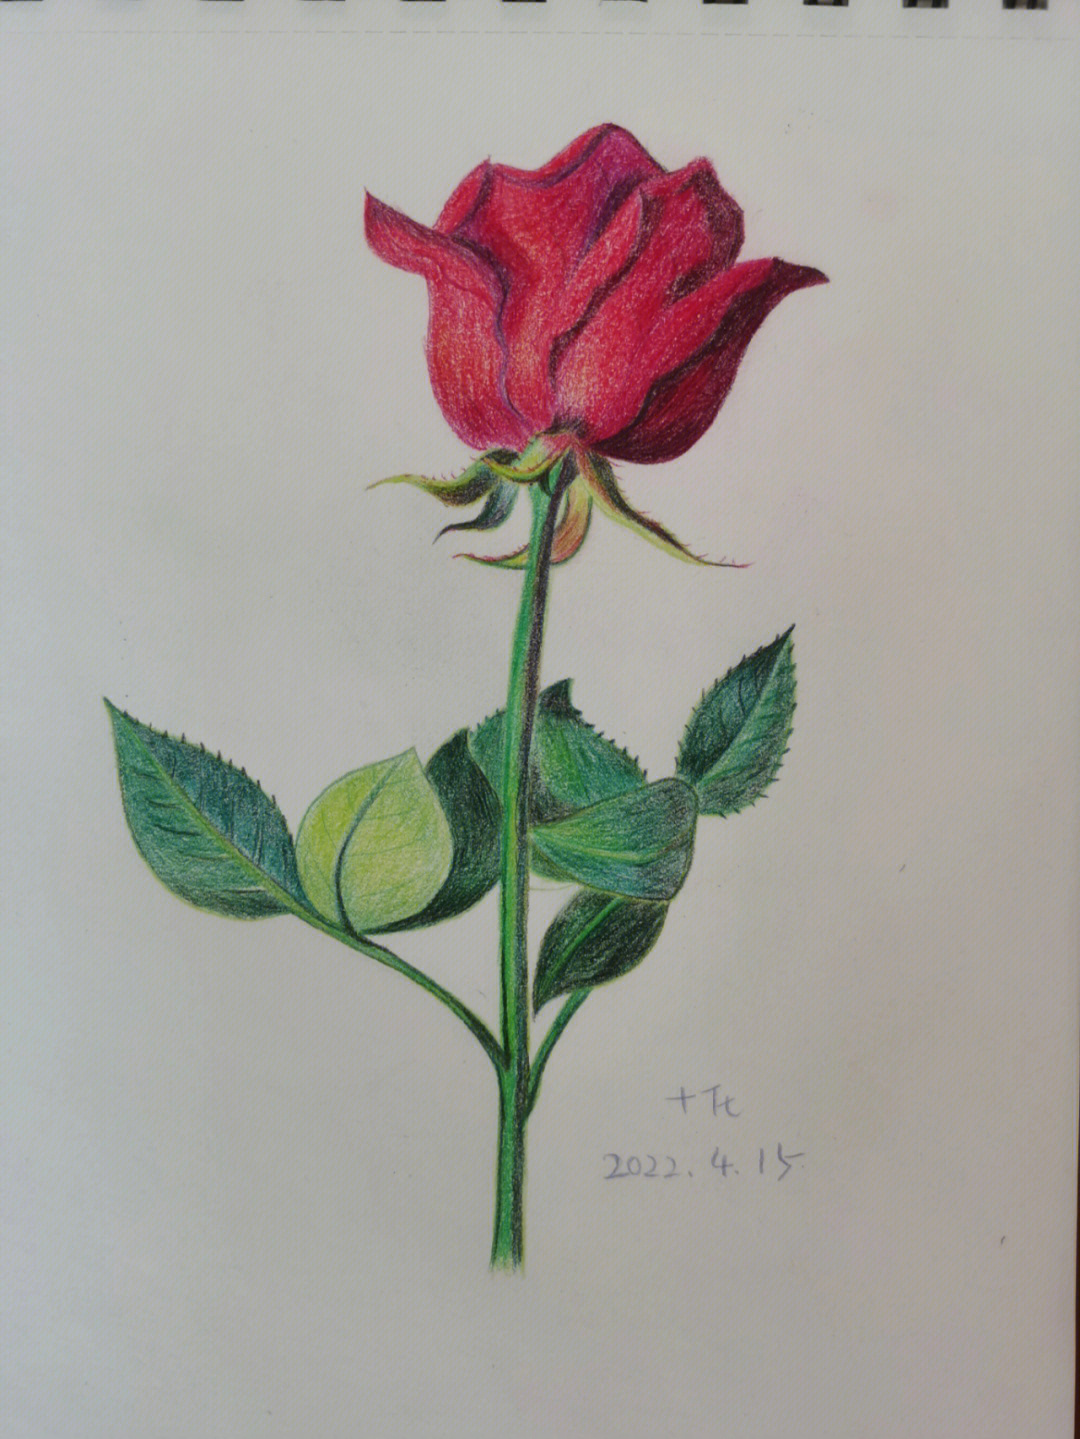 玫瑰花束彩铅图片